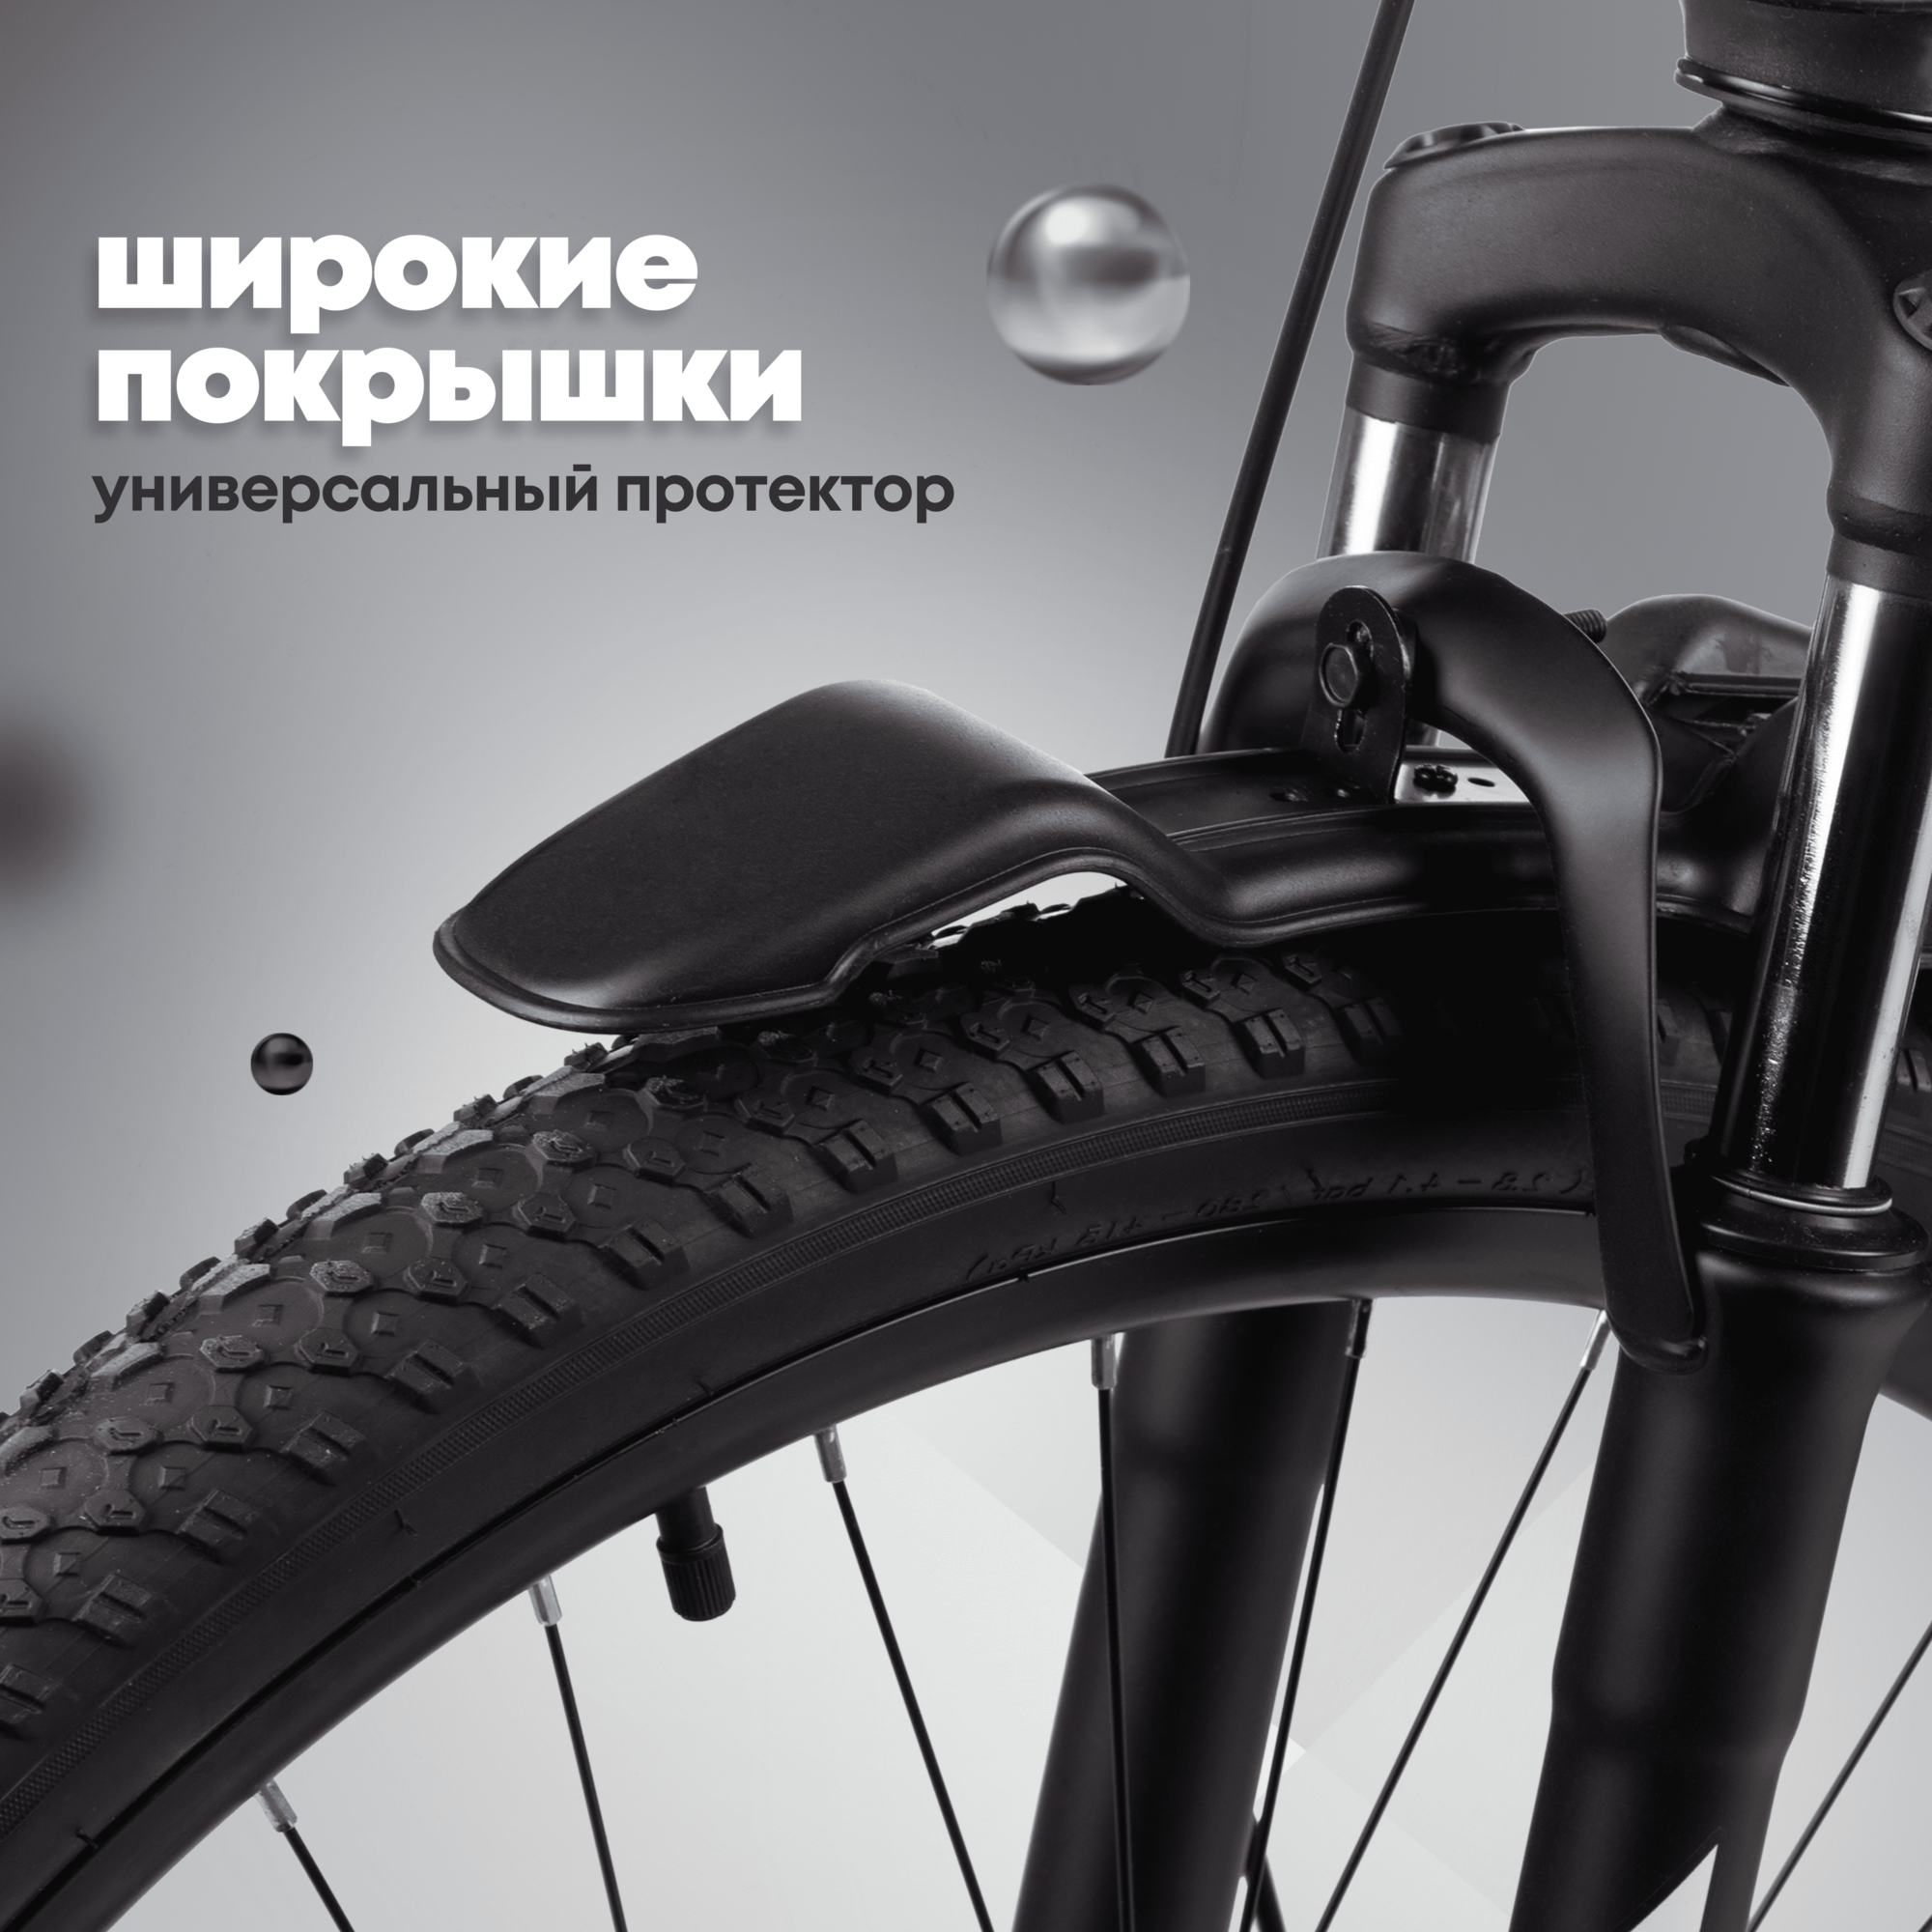 Велосипед горный взрослый Slash Stream серый, 27.5 колеса, 17 рама, 21 скорость (рост 160-172 см)